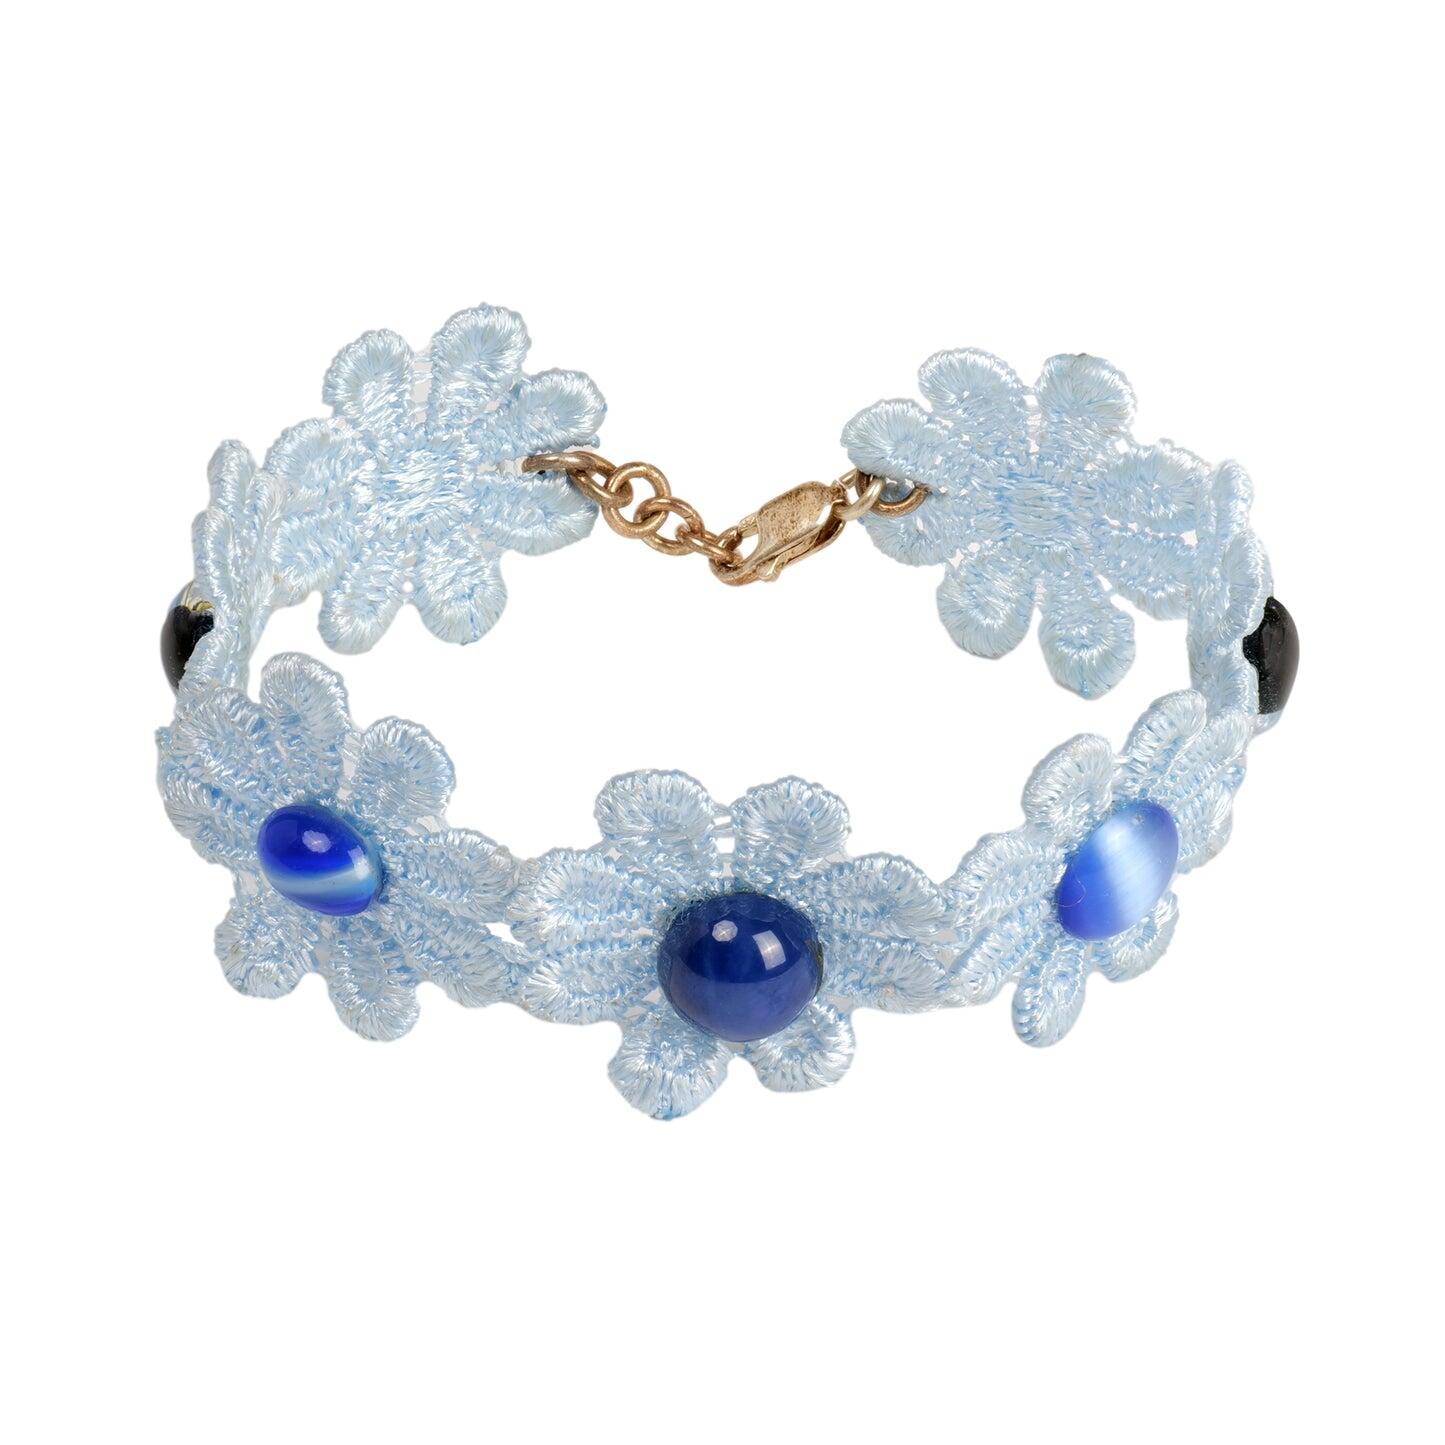 Cotton Light Blue Bracelet With Navy Stone